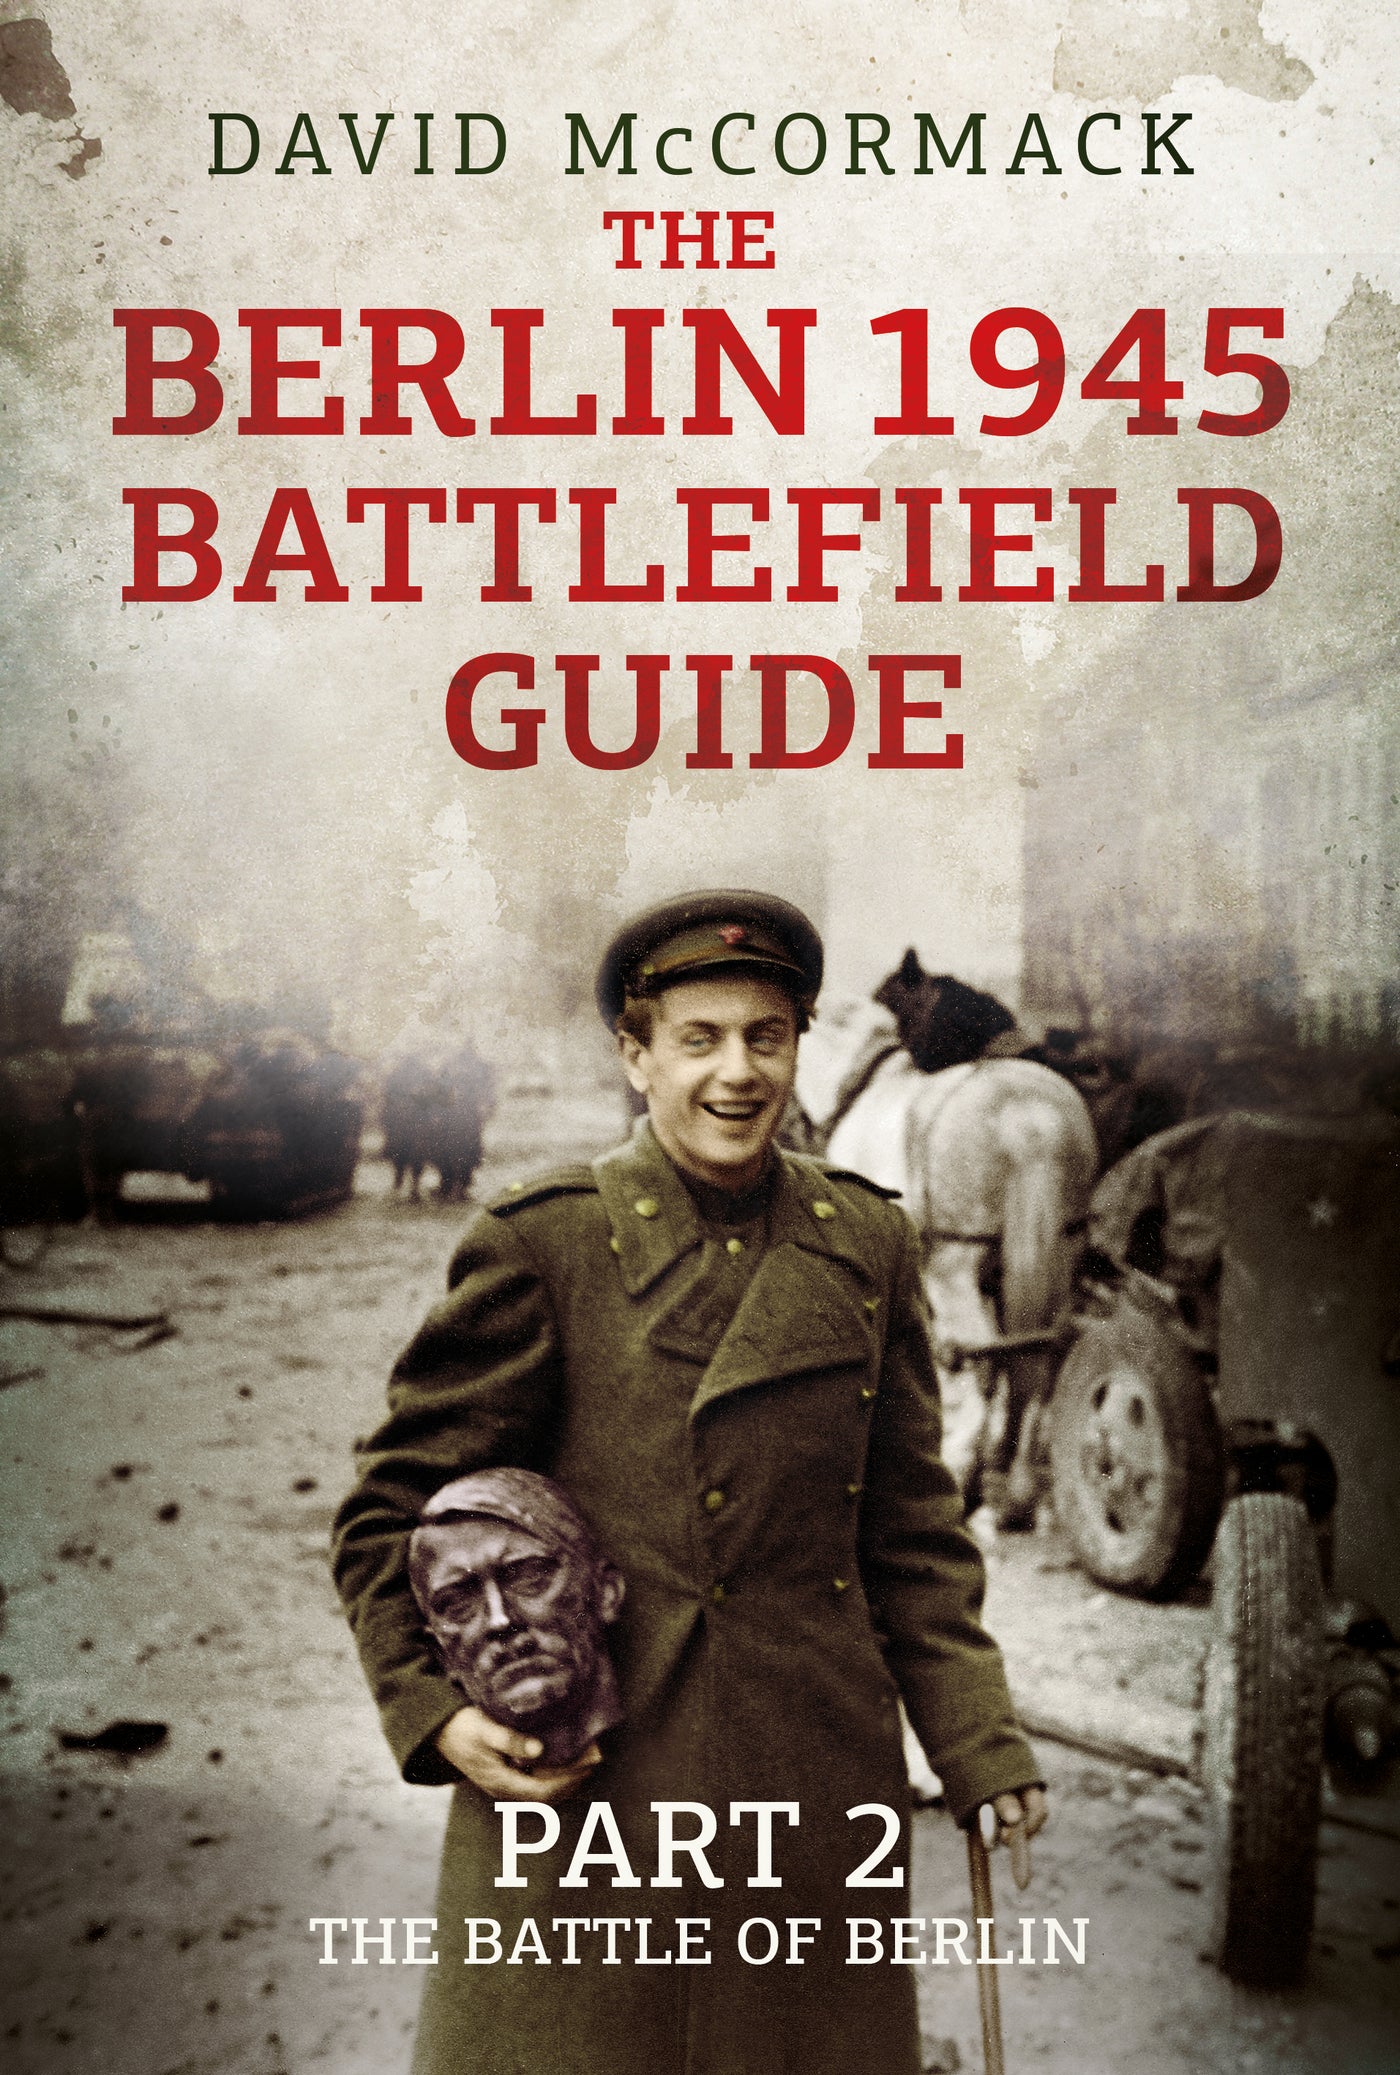 The Berlin 1945 Battlefield Guide